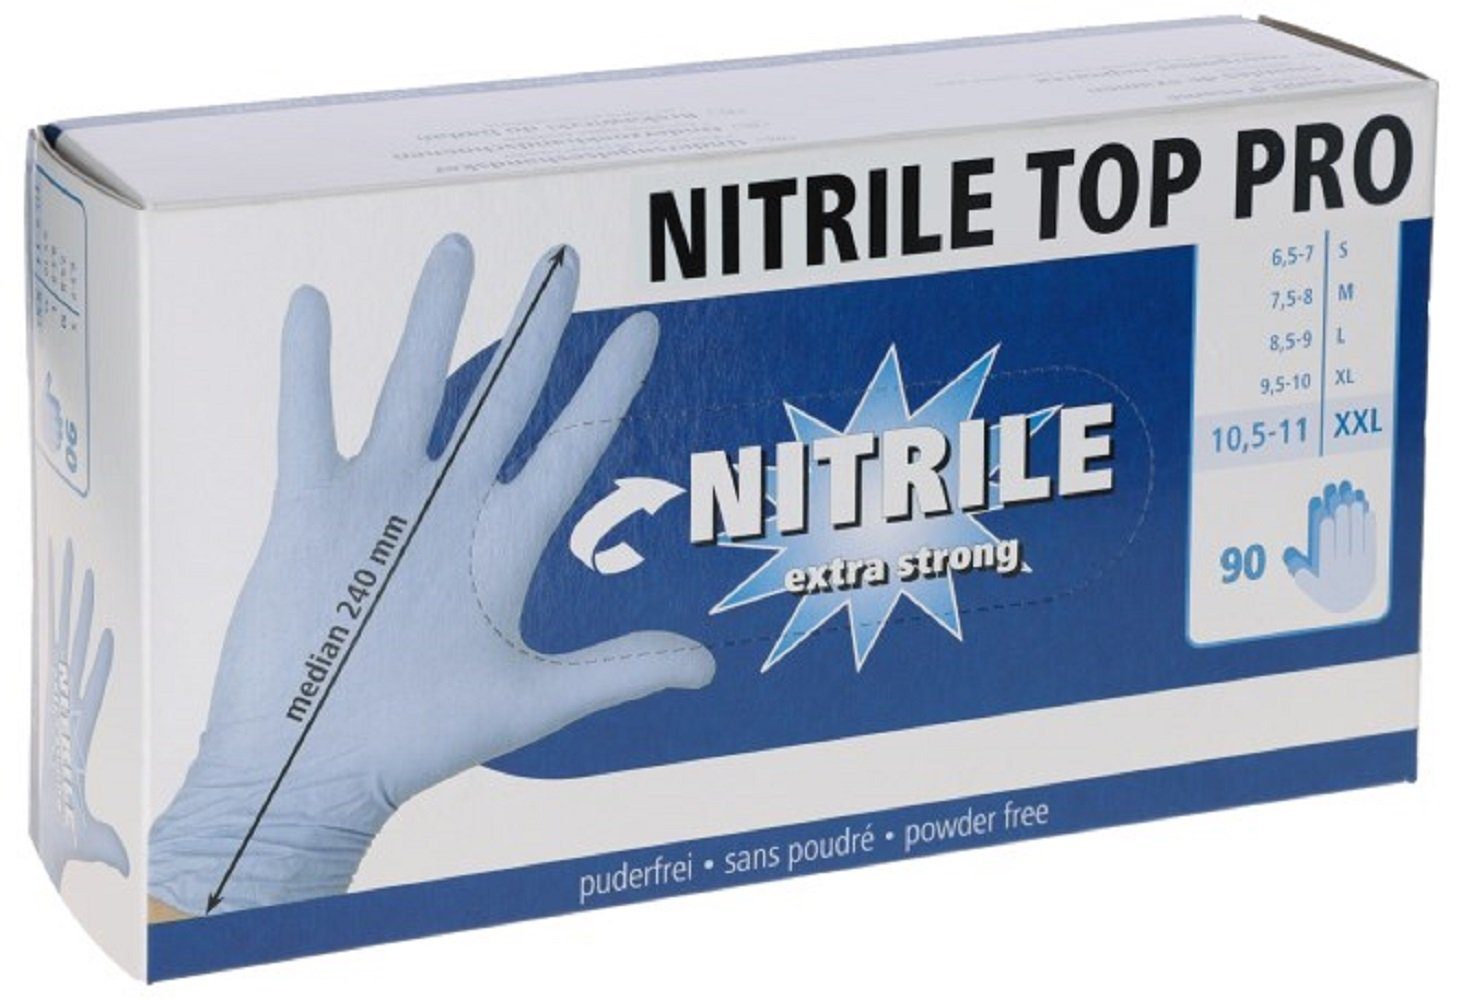 Kerbl Einweghandschuhe Einmalhandschuh Größe S, Pro, Nitril 6,5-7 / Top blau, 153070